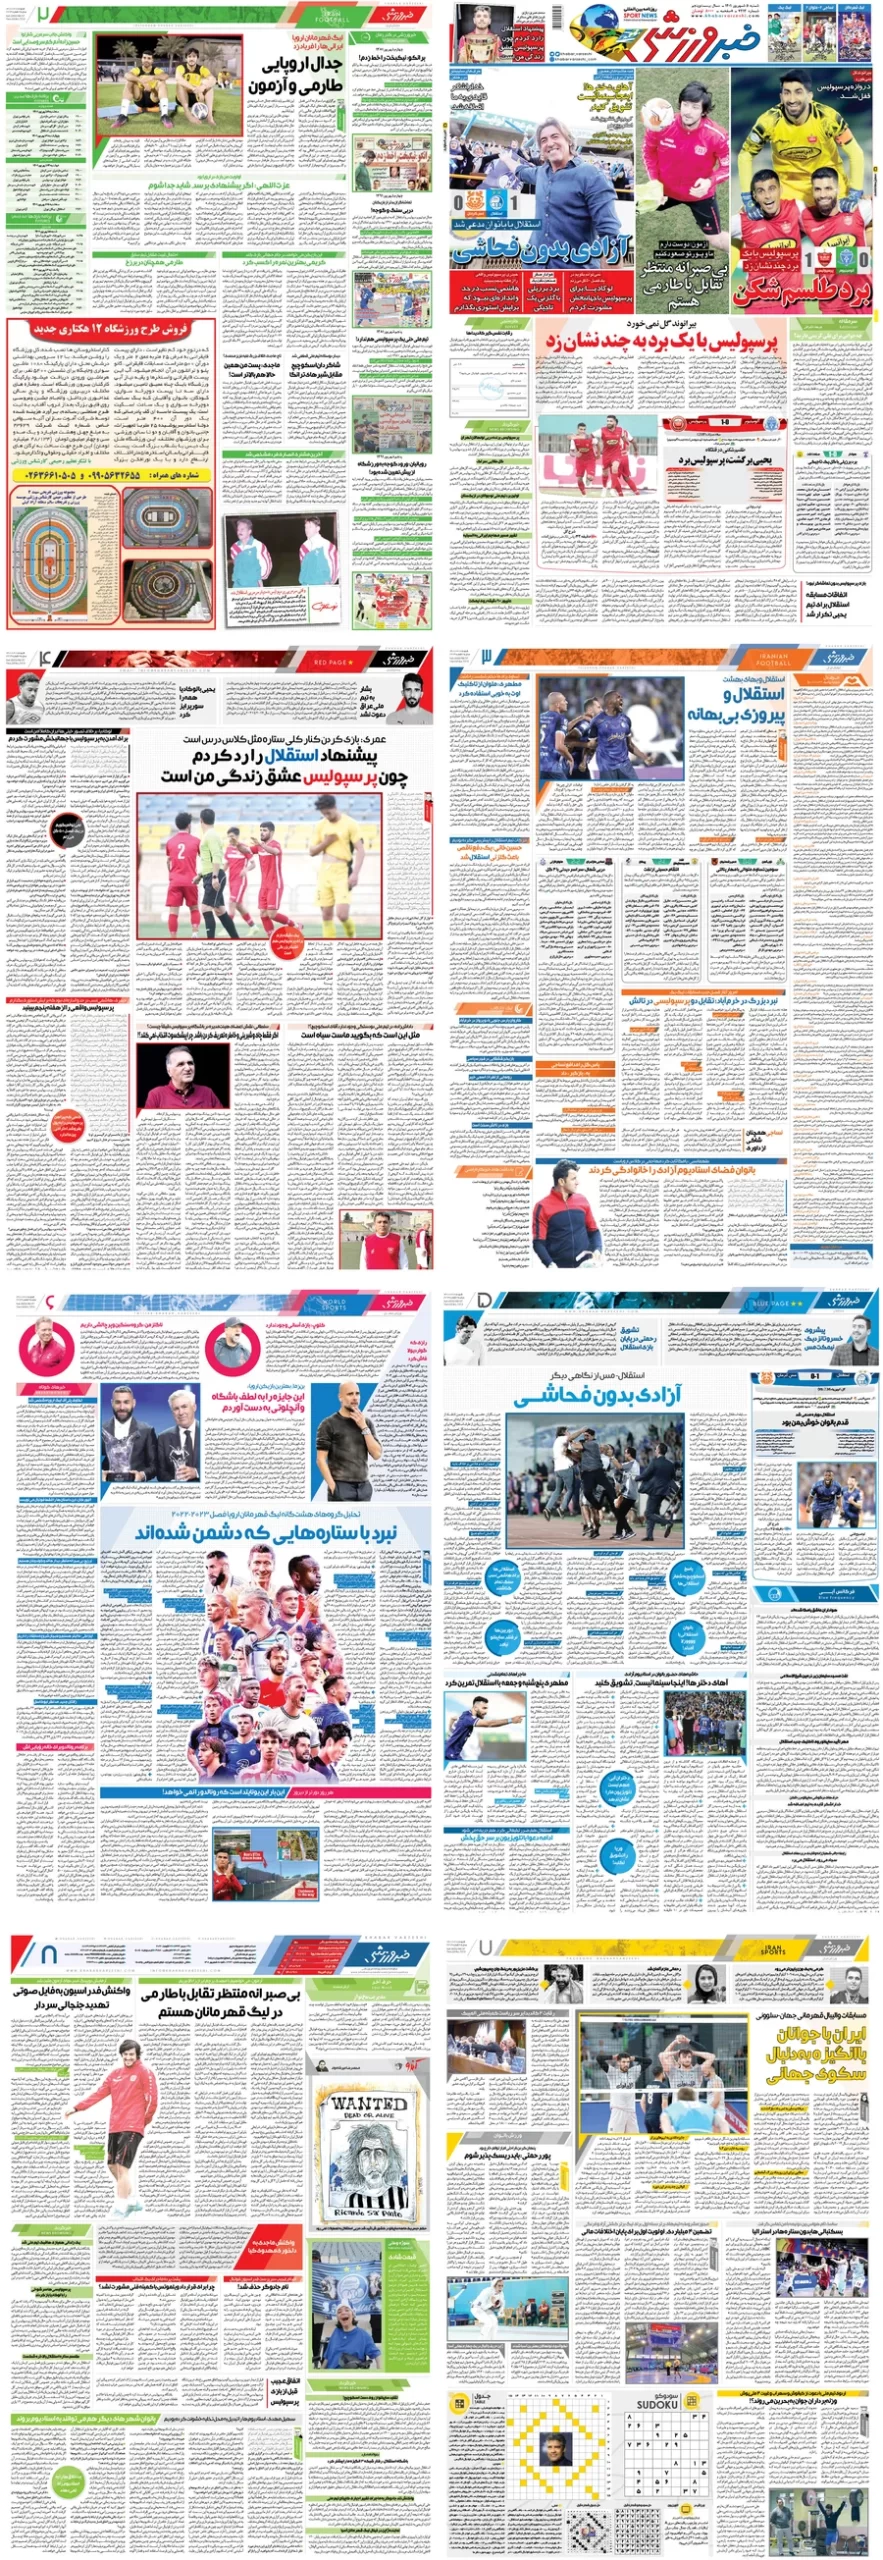 صفحات روزنامه خبرورزشی ششنبه ۵ شهریور